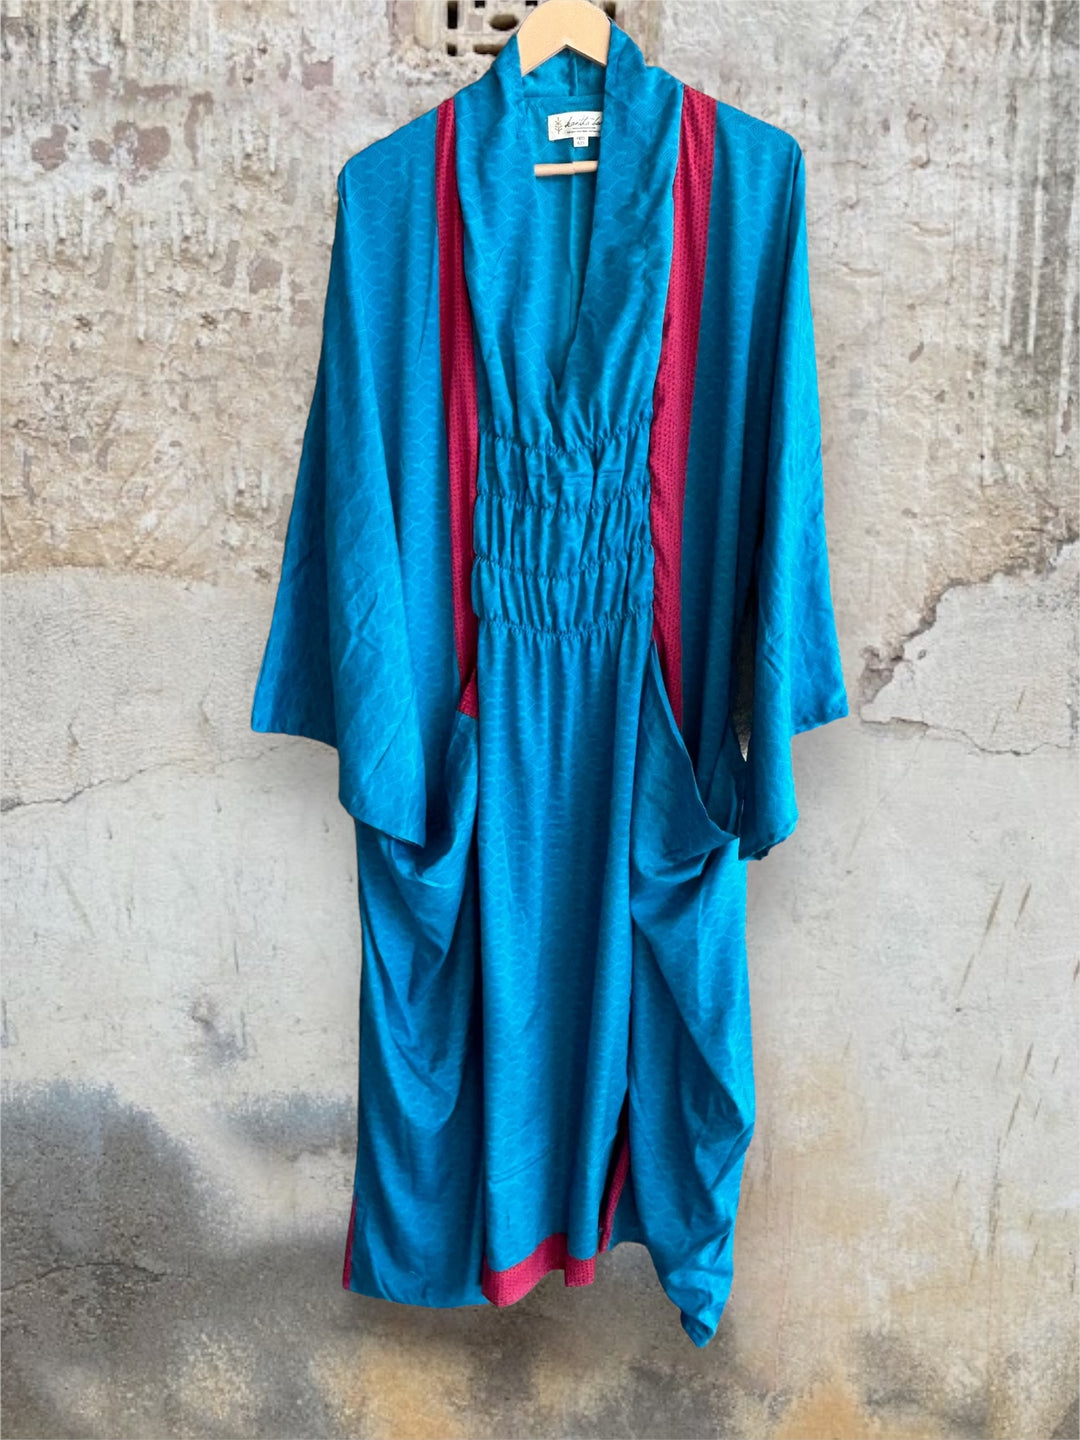 Ruched Dress 0424 181 - Kantha Bae